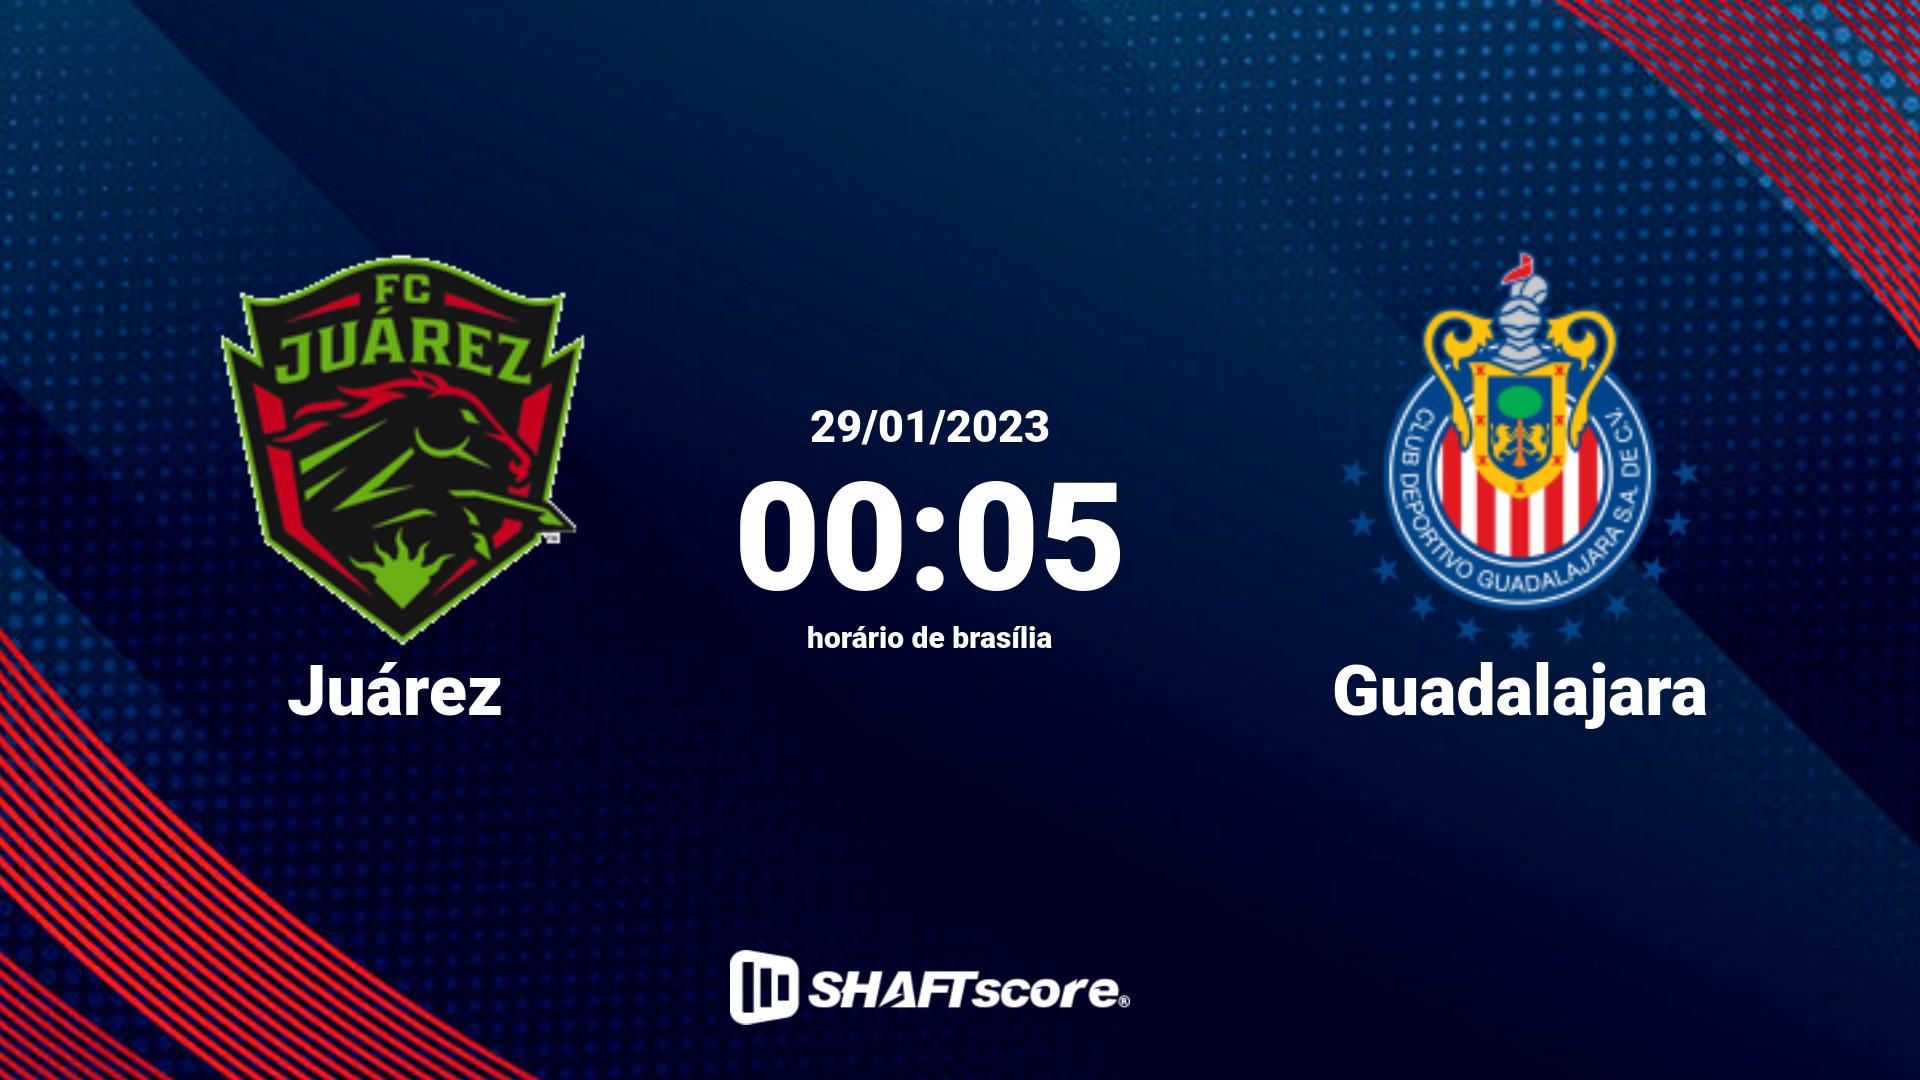 Estatísticas do jogo Juárez vs Guadalajara 29.01 00:05